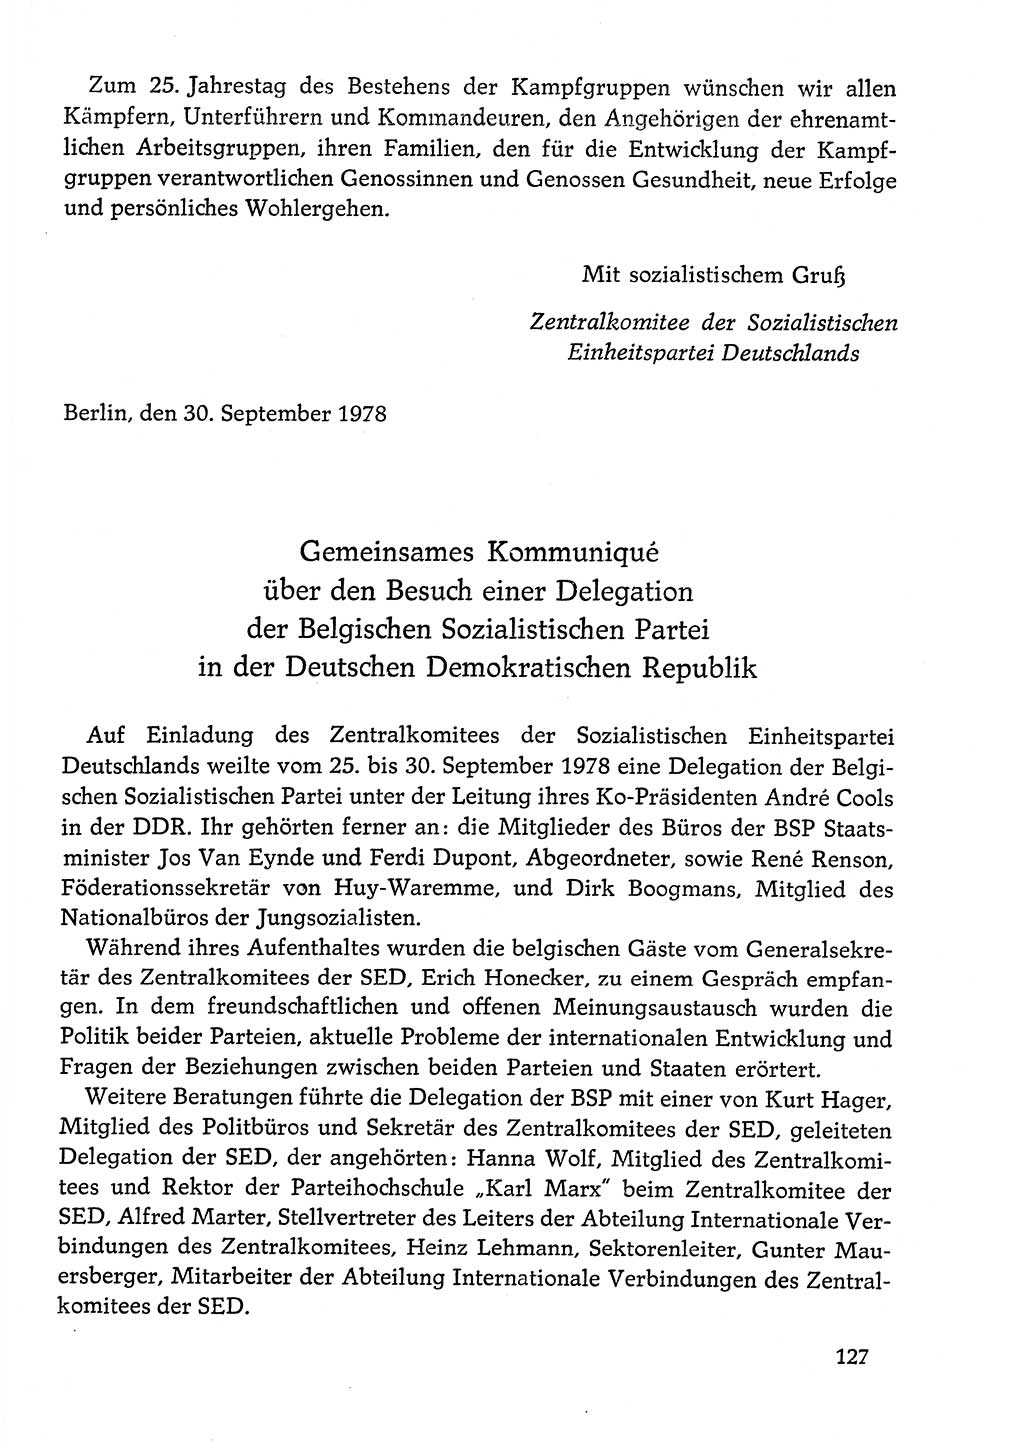 Dokumente der Sozialistischen Einheitspartei Deutschlands (SED) [Deutsche Demokratische Republik (DDR)] 1978-1979, Seite 127 (Dok. SED DDR 1978-1979, S. 127)